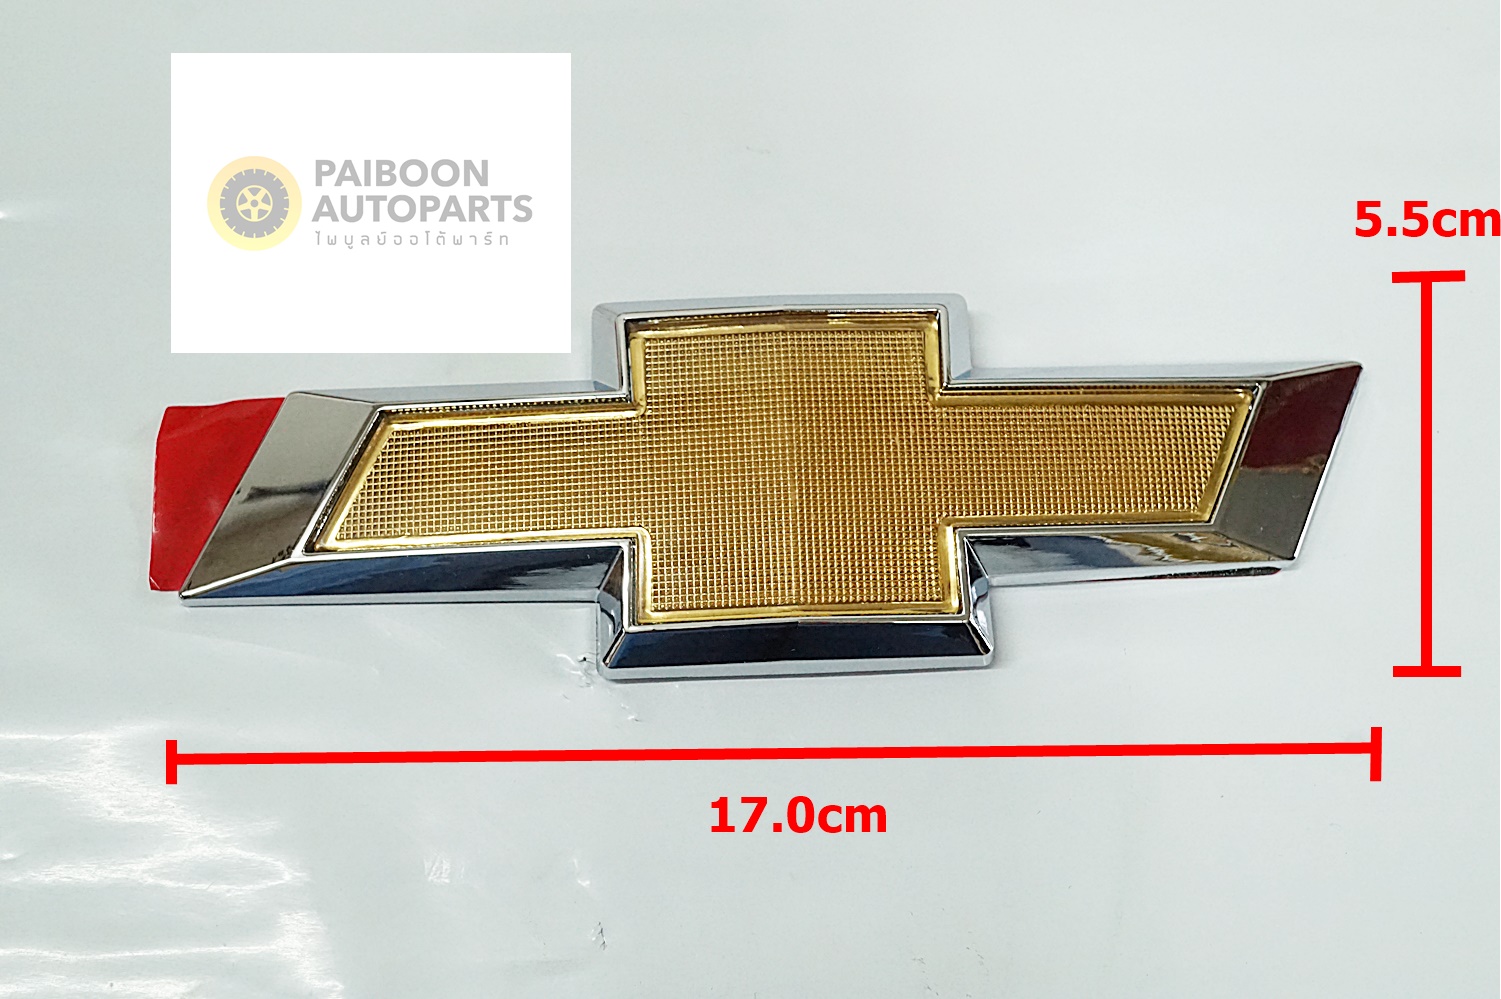 ป้ายโลโก้พลาสติกสีทองขอบเงิน Chevrolet ขนาด 17.0x5.5cmกรุณาวัดขนาดของเดิมเพื่อเทียบก่อนสั่งติดตั้งด้วยเทปกาวสองหน้าด้านหลัง